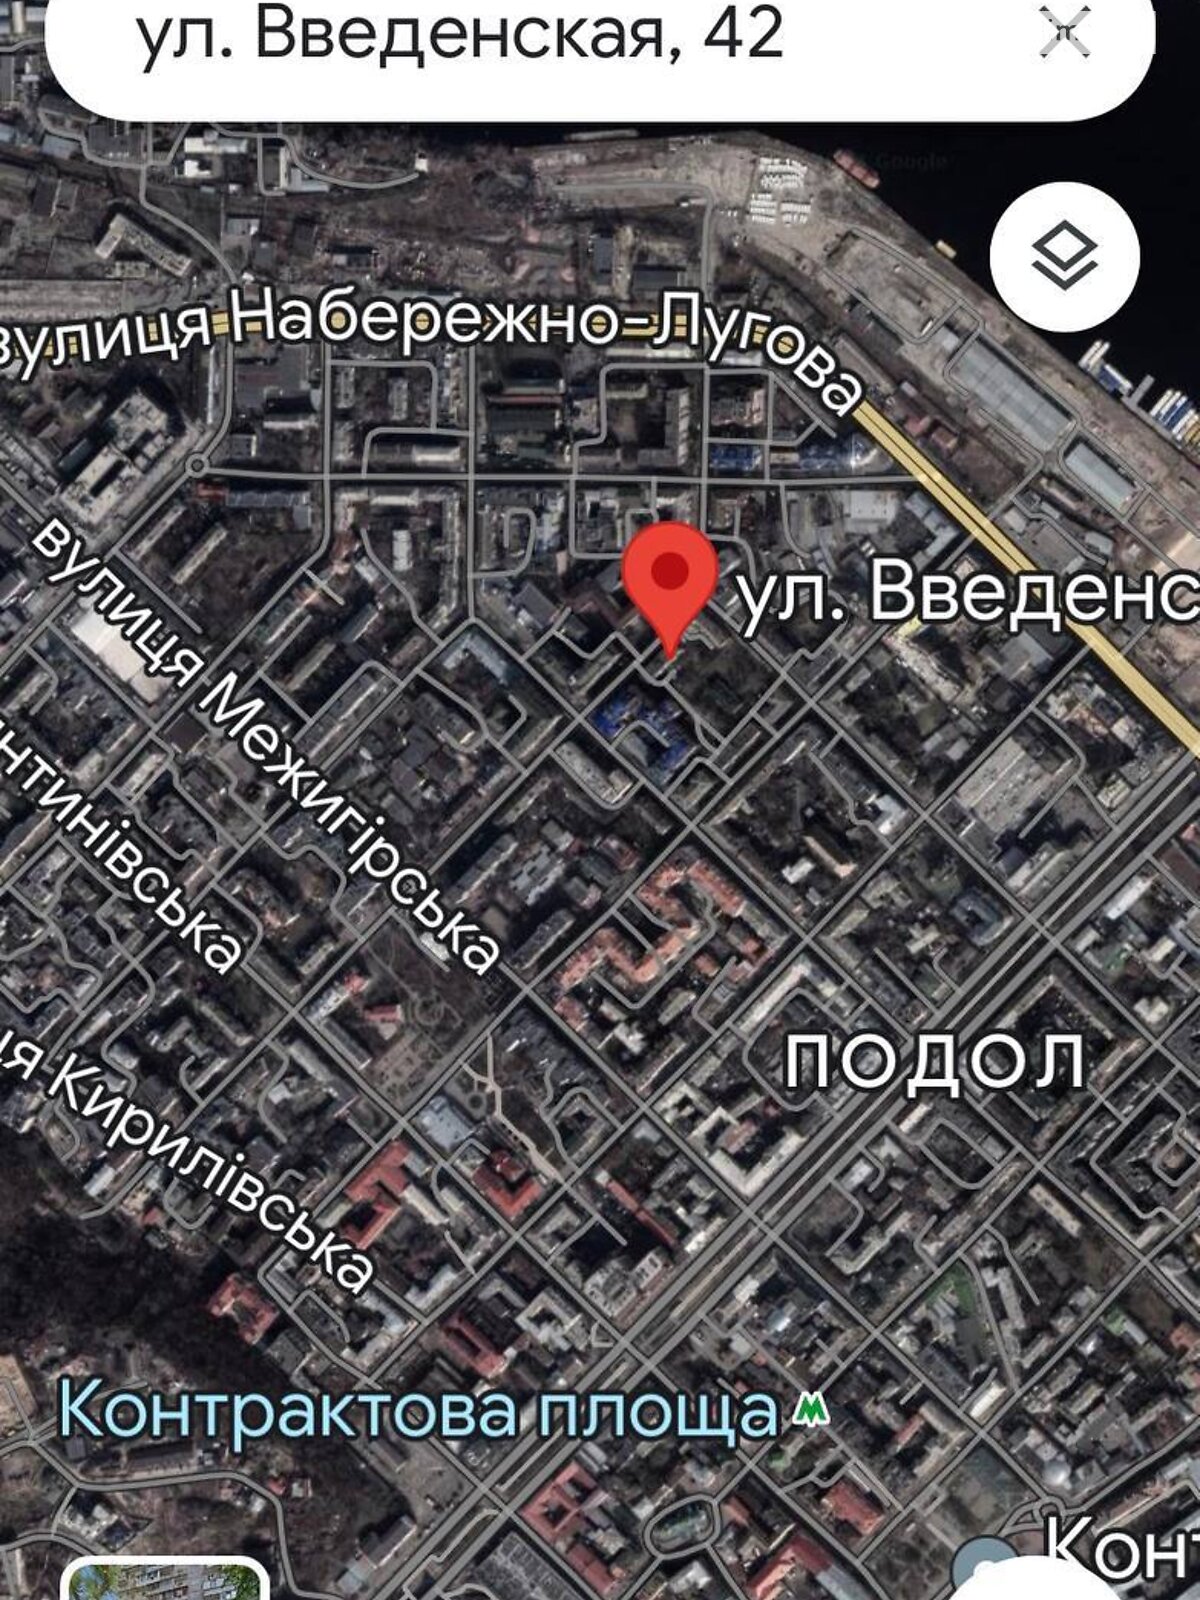 Аренда офисного помещения в Киеве, Введенская улица 42, помещений - 3, этаж - 1 фото 1